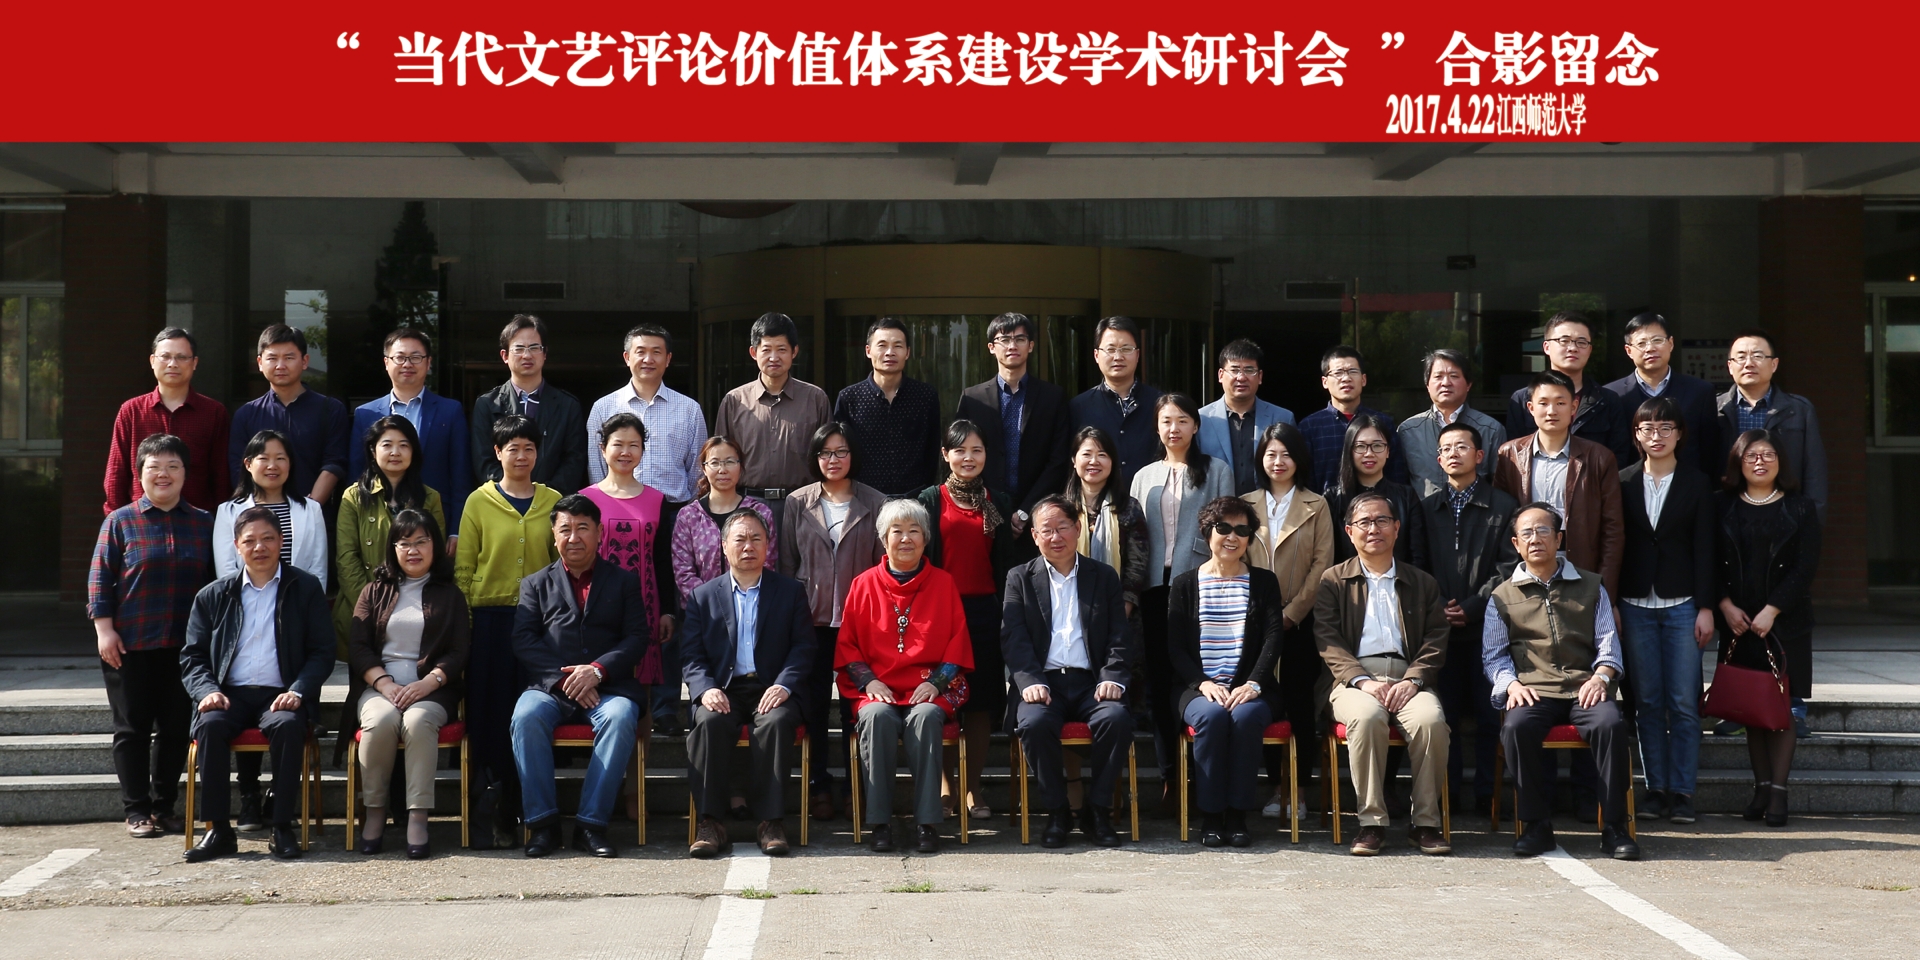 我院教师赴南昌参加“当代文艺评论价值体系建设”会议